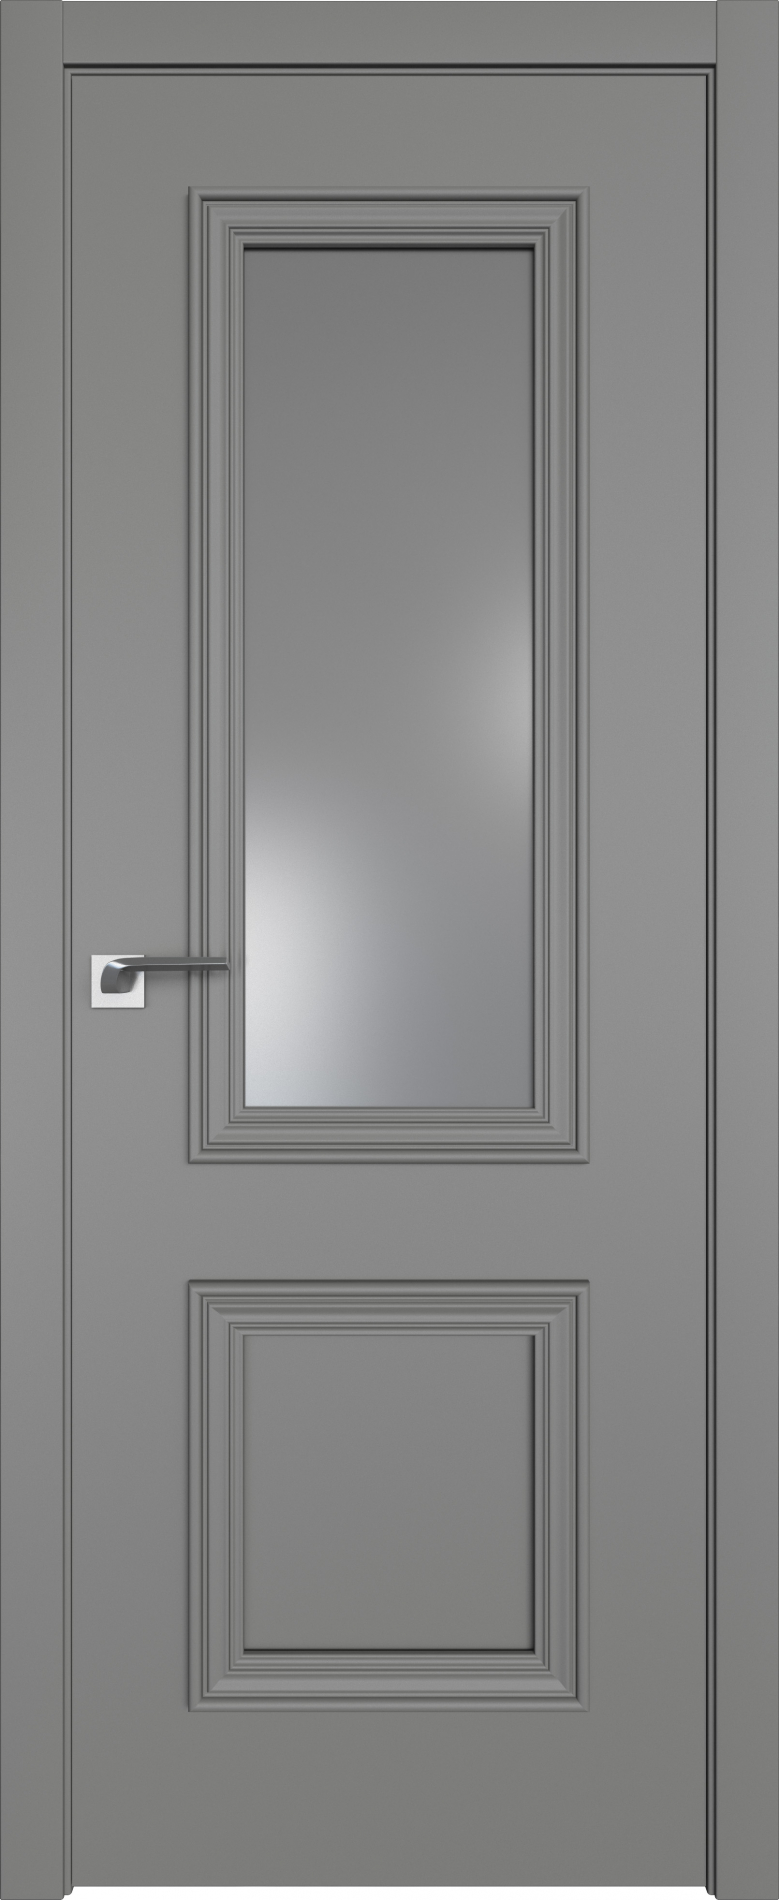 межкомнатные двери  Profil Doors 53E ABS грей